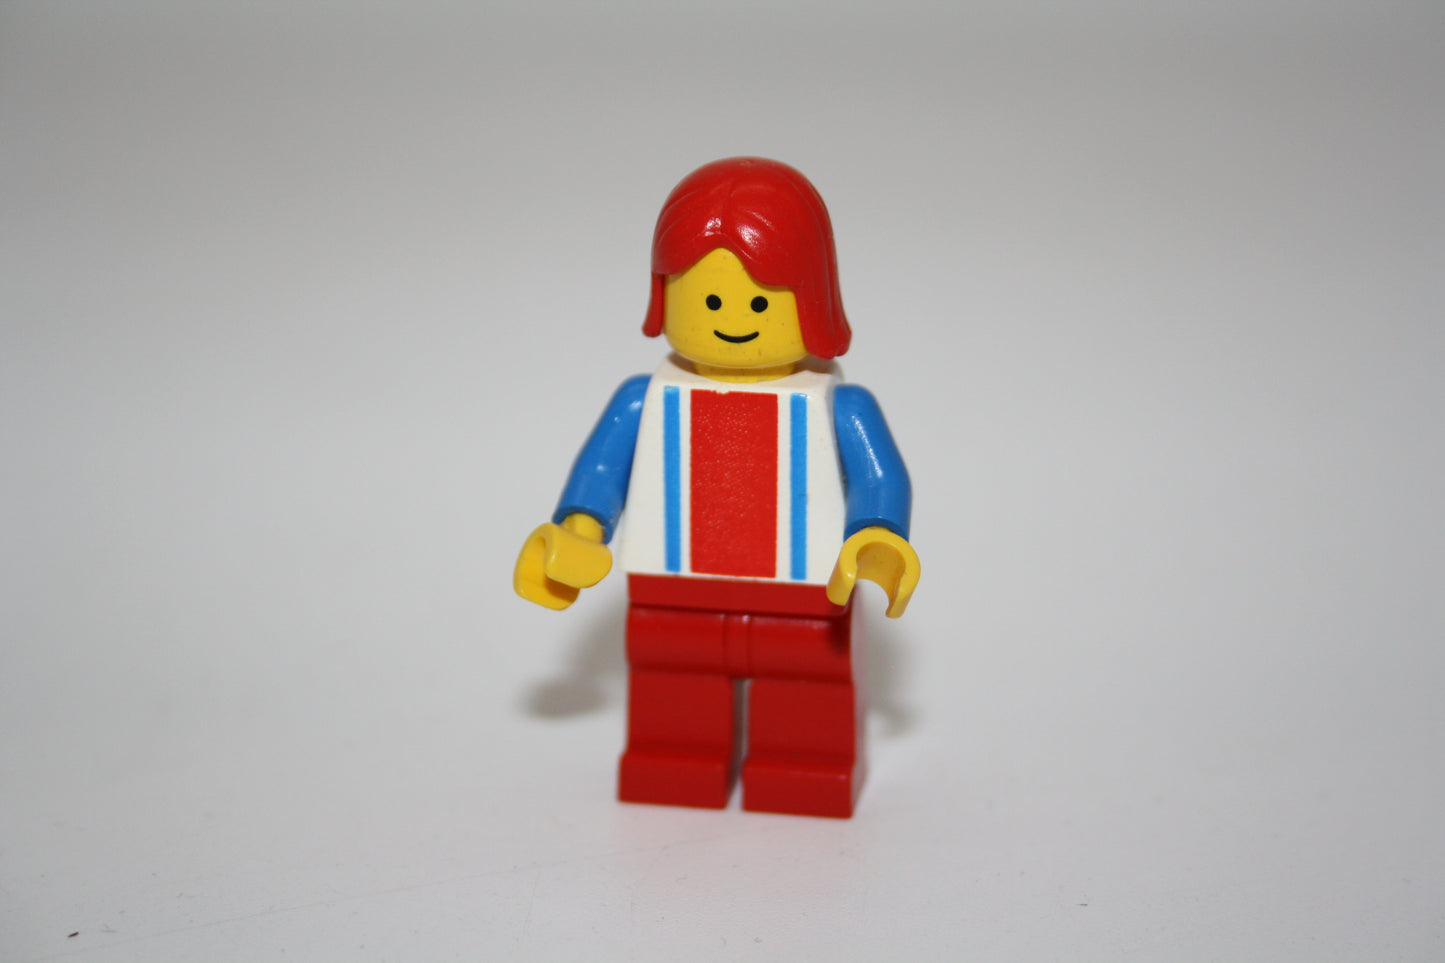 LEGO® System - Frau mit rot&blauen Balken auf Oberteil - rote Hose - gestreiftes Oberteil - Minifigur - aus 6399 Monorail Airport Schuttle